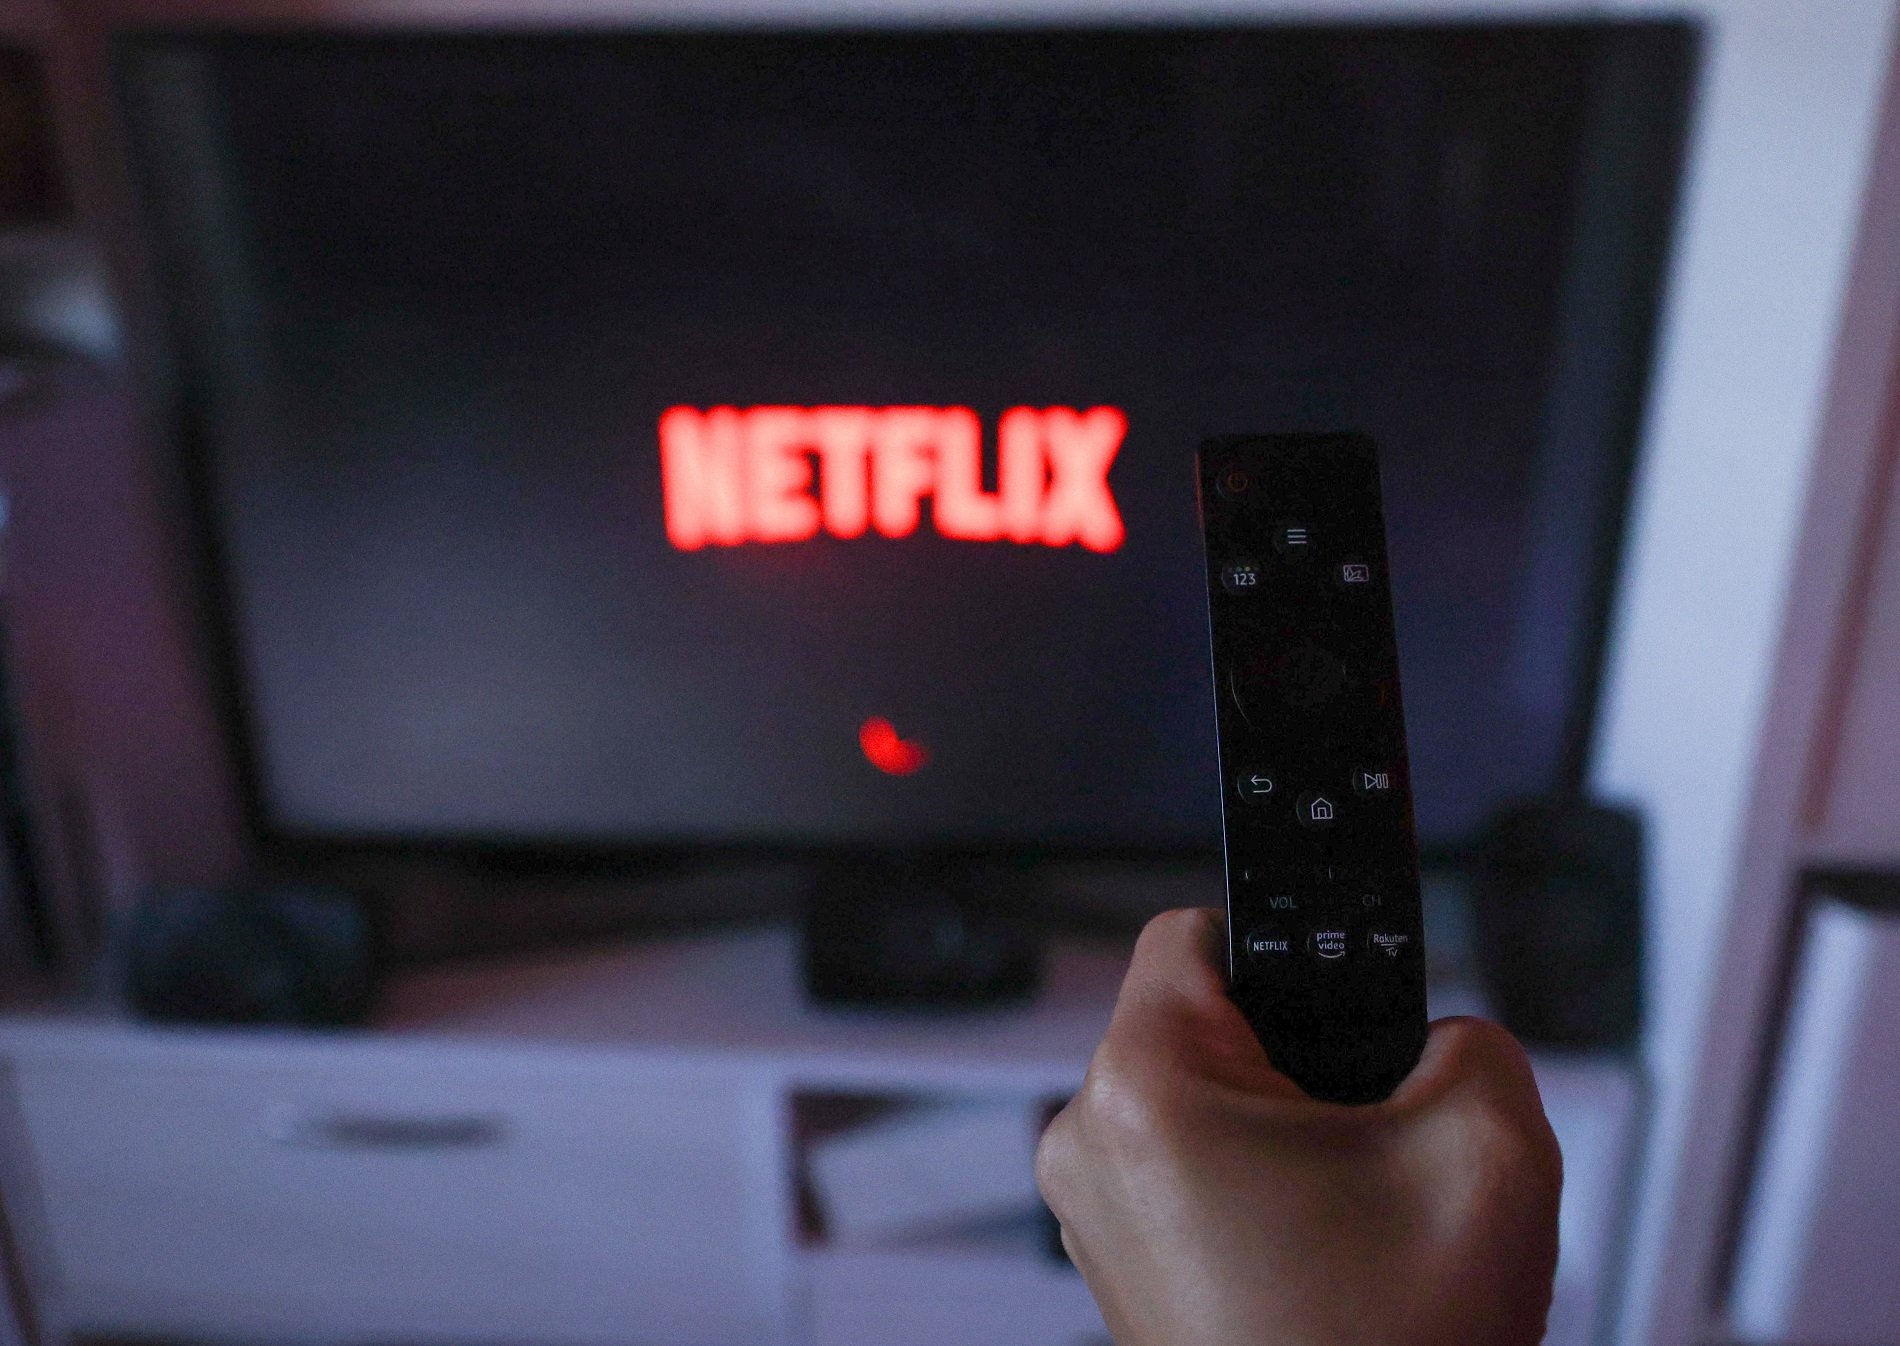 La tarifa económica de Netflix: 5,49 euros al mes, con anuncios y sin descargas